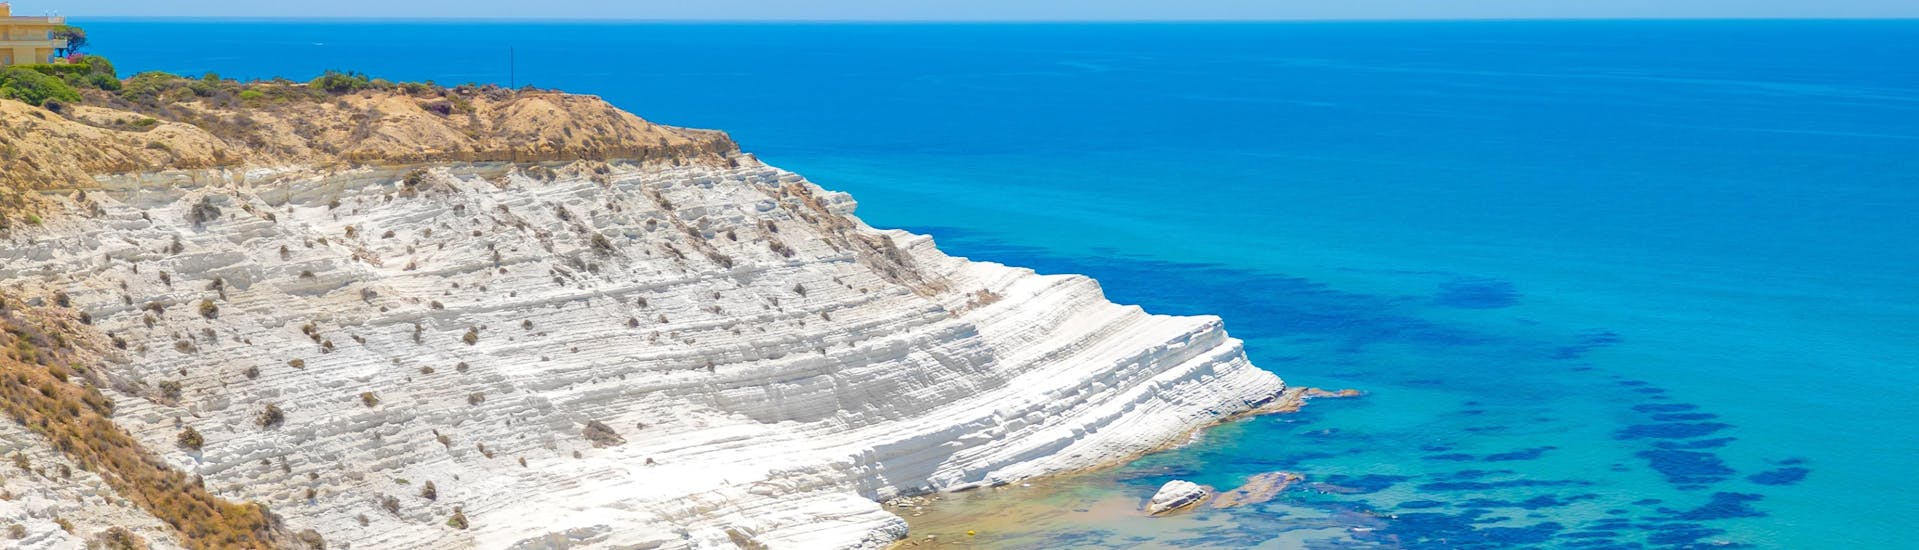 Una de las playas más bellas y famosas de Agrigento, en Sicilia.